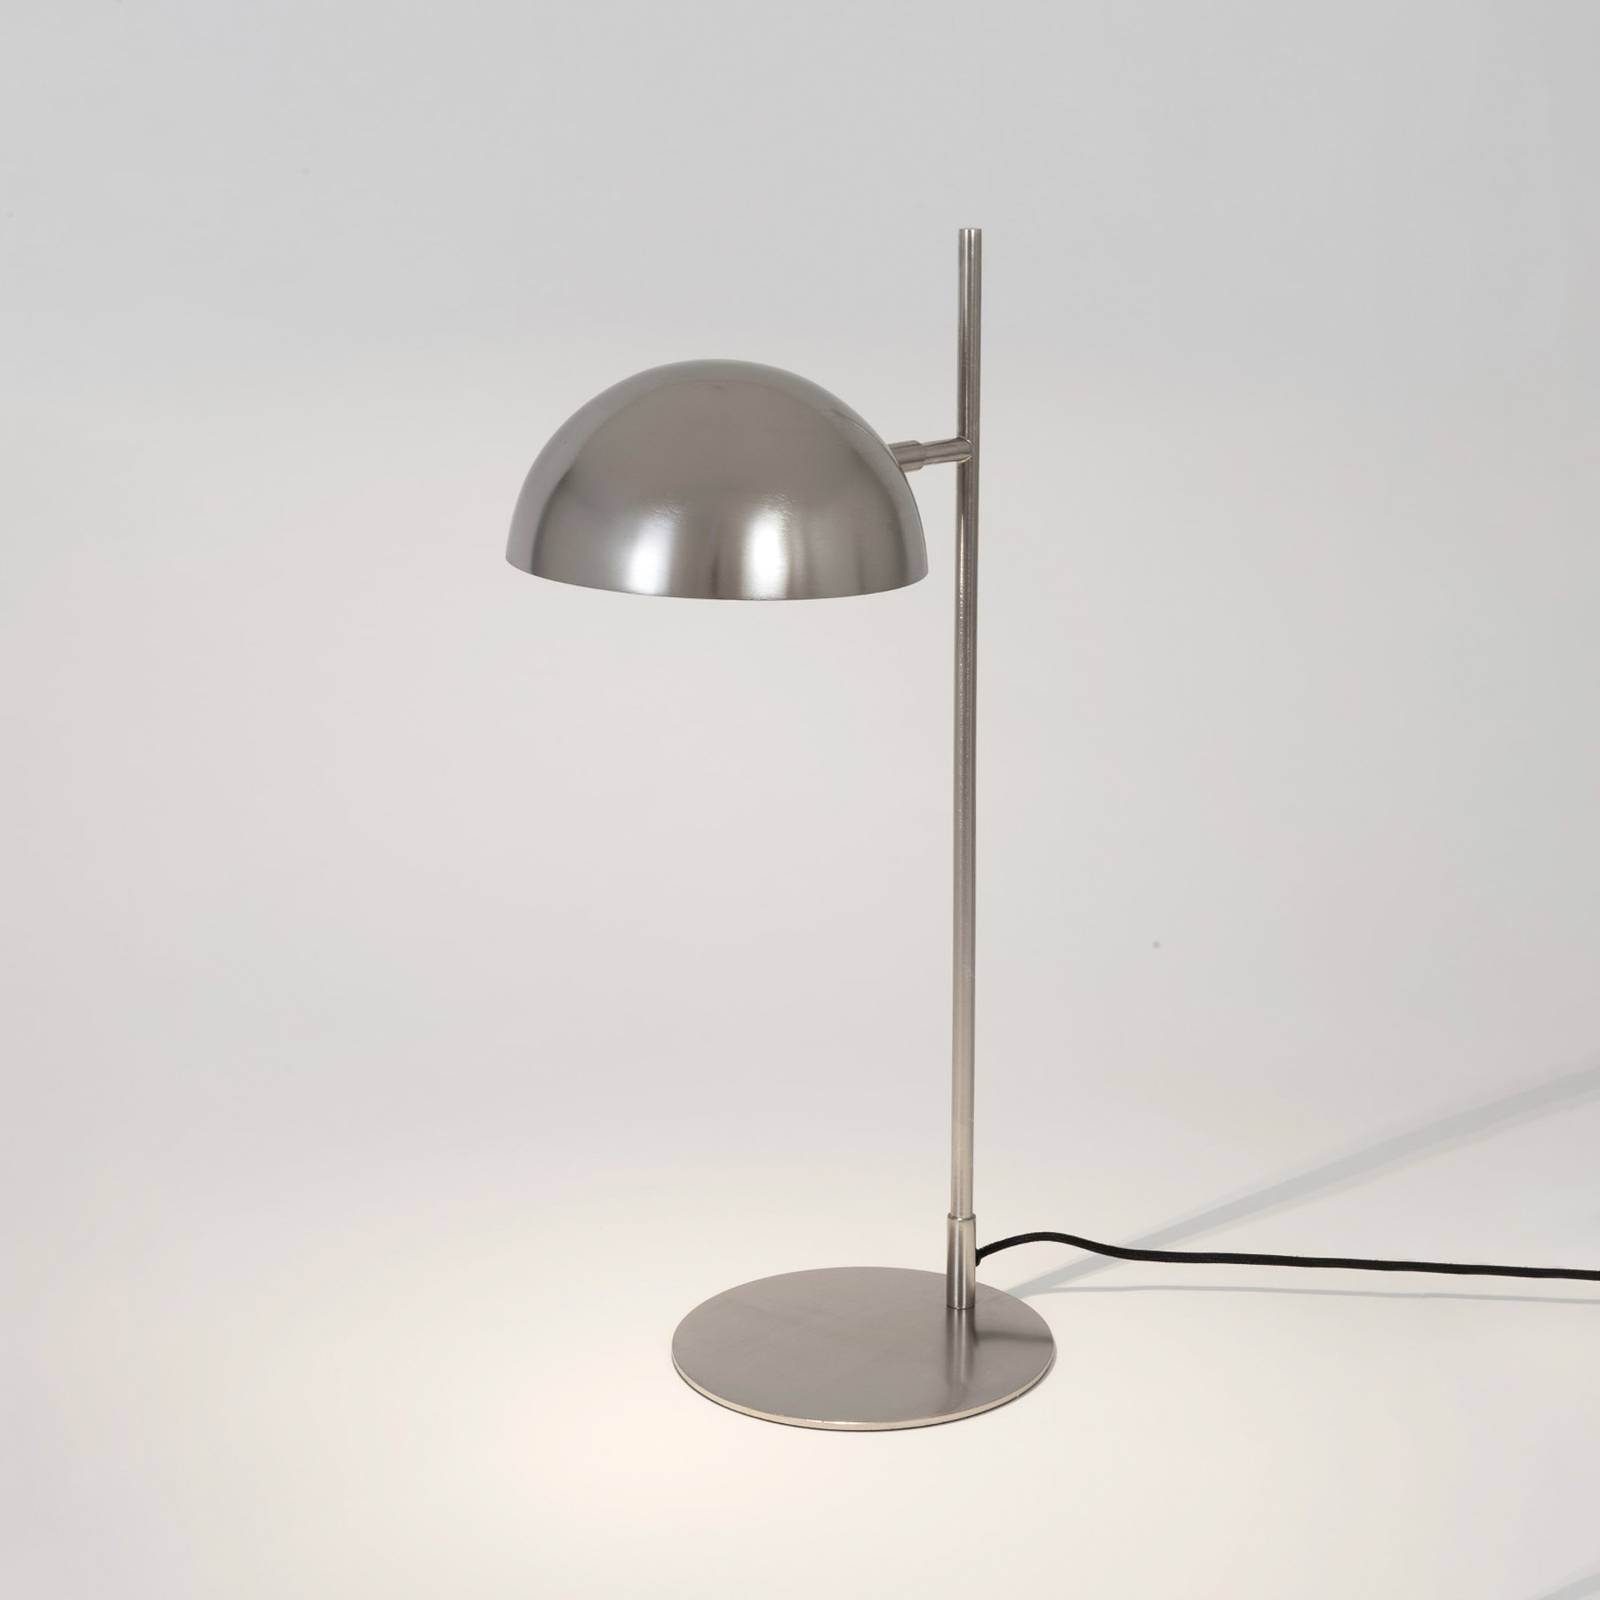 Holländer miro asztali lámpa, ezüst színű, magasság 58 cm, vas/réz